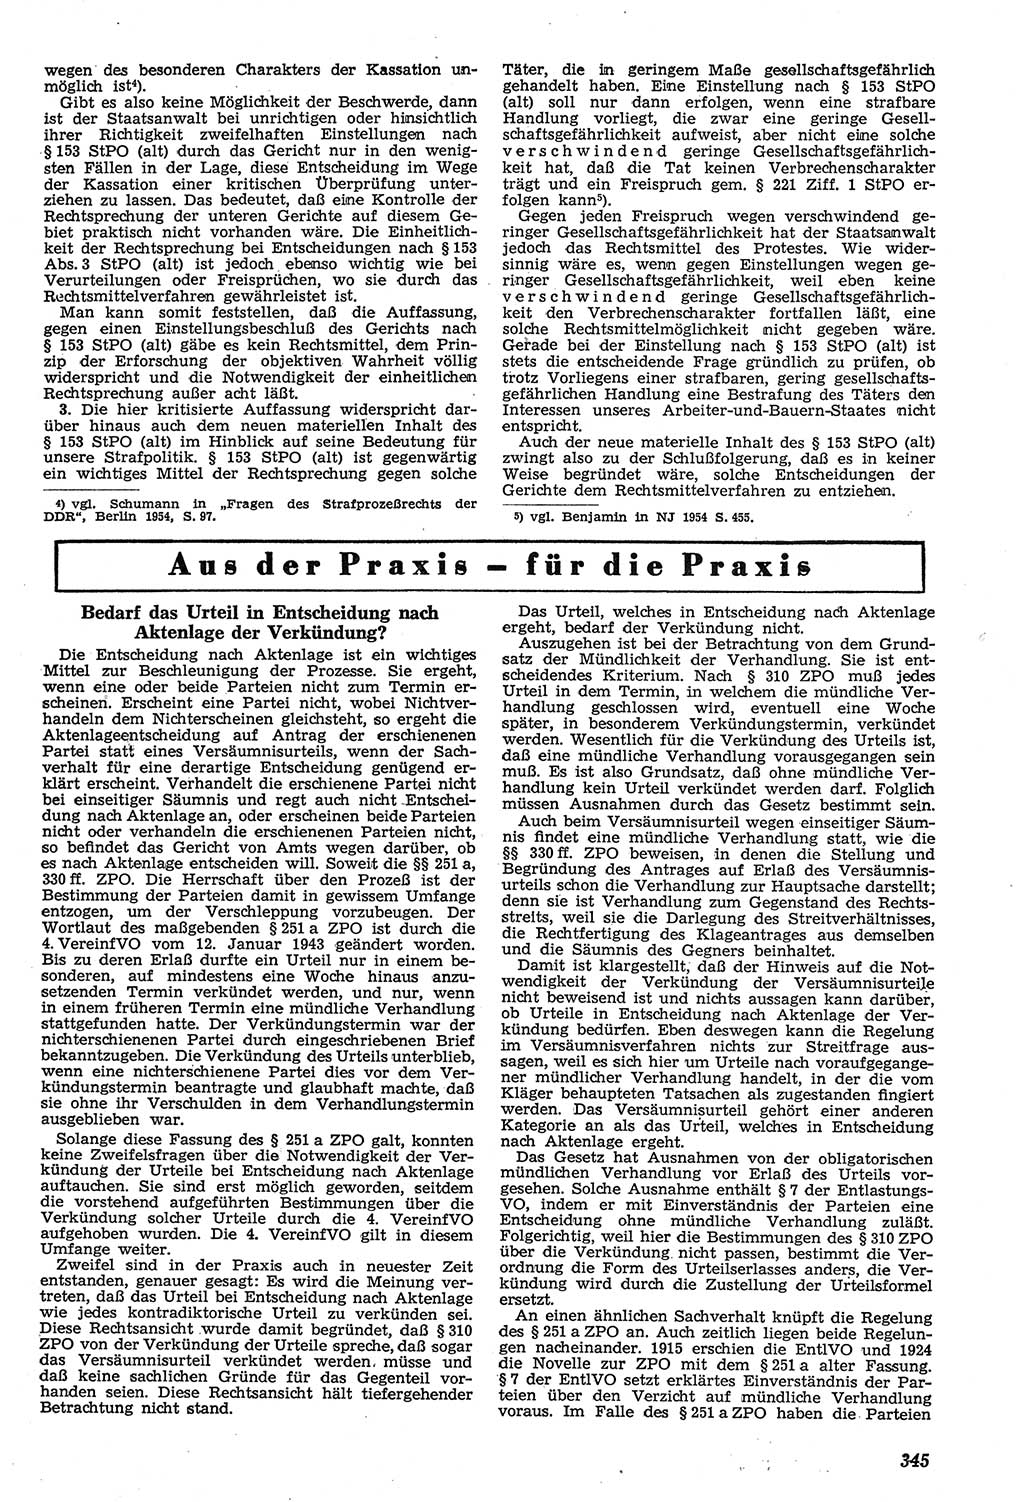 Neue Justiz (NJ), Zeitschrift für Recht und Rechtswissenschaft [Deutsche Demokratische Republik (DDR)], 11. Jahrgang 1957, Seite 345 (NJ DDR 1957, S. 345)